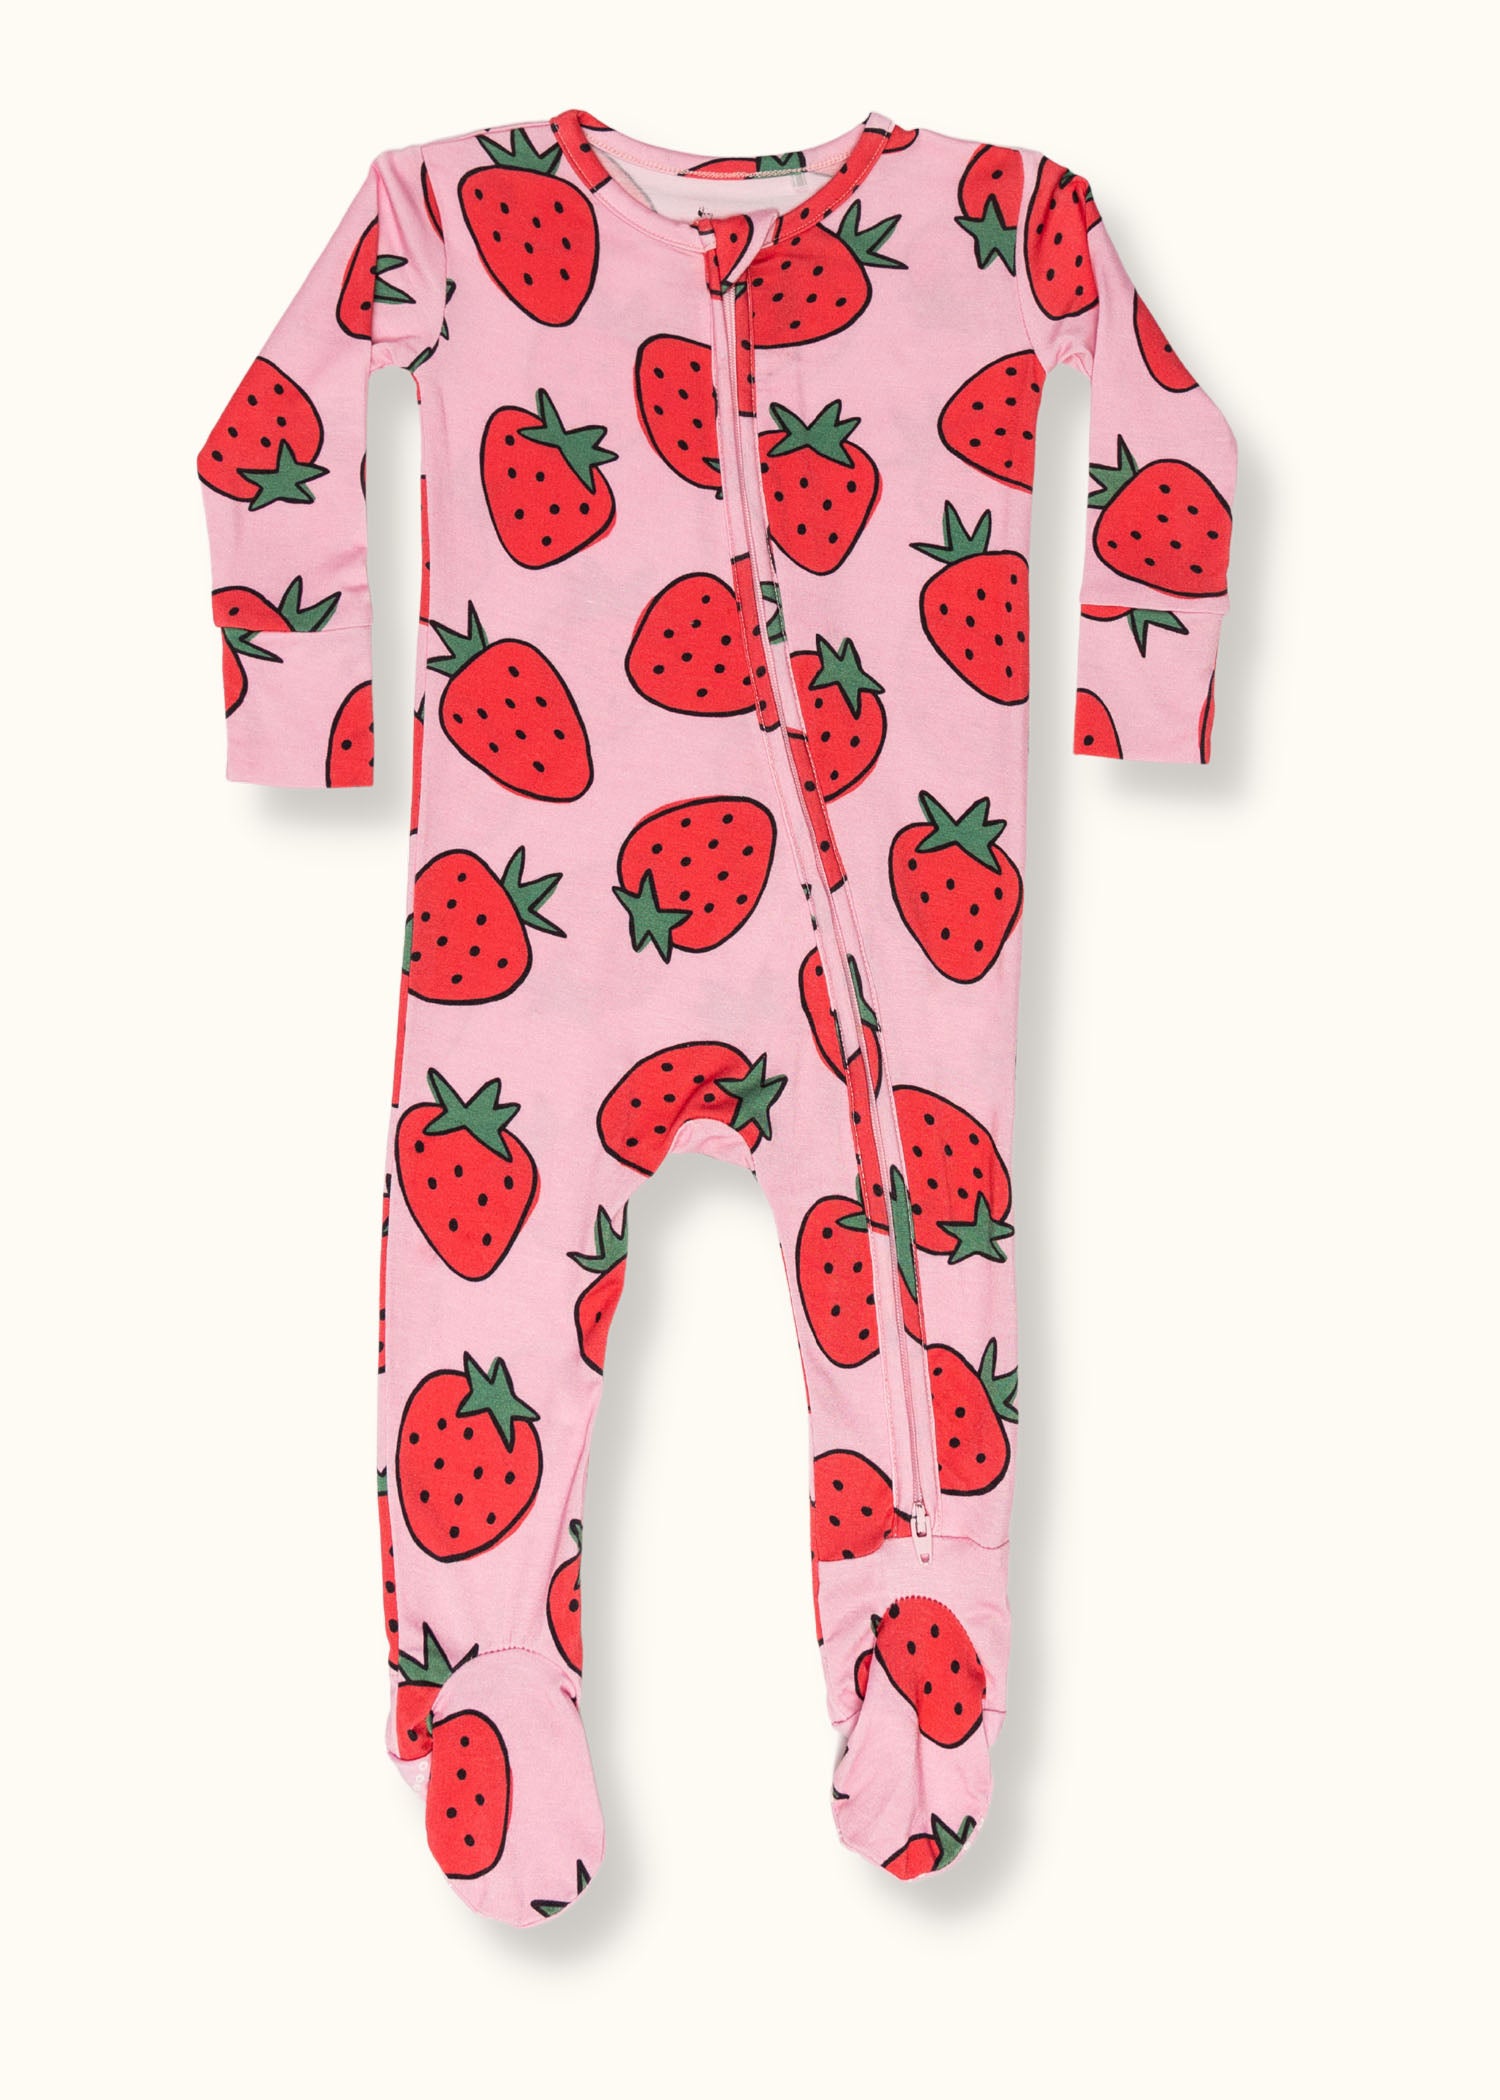 Berry-licious Footie Pajama